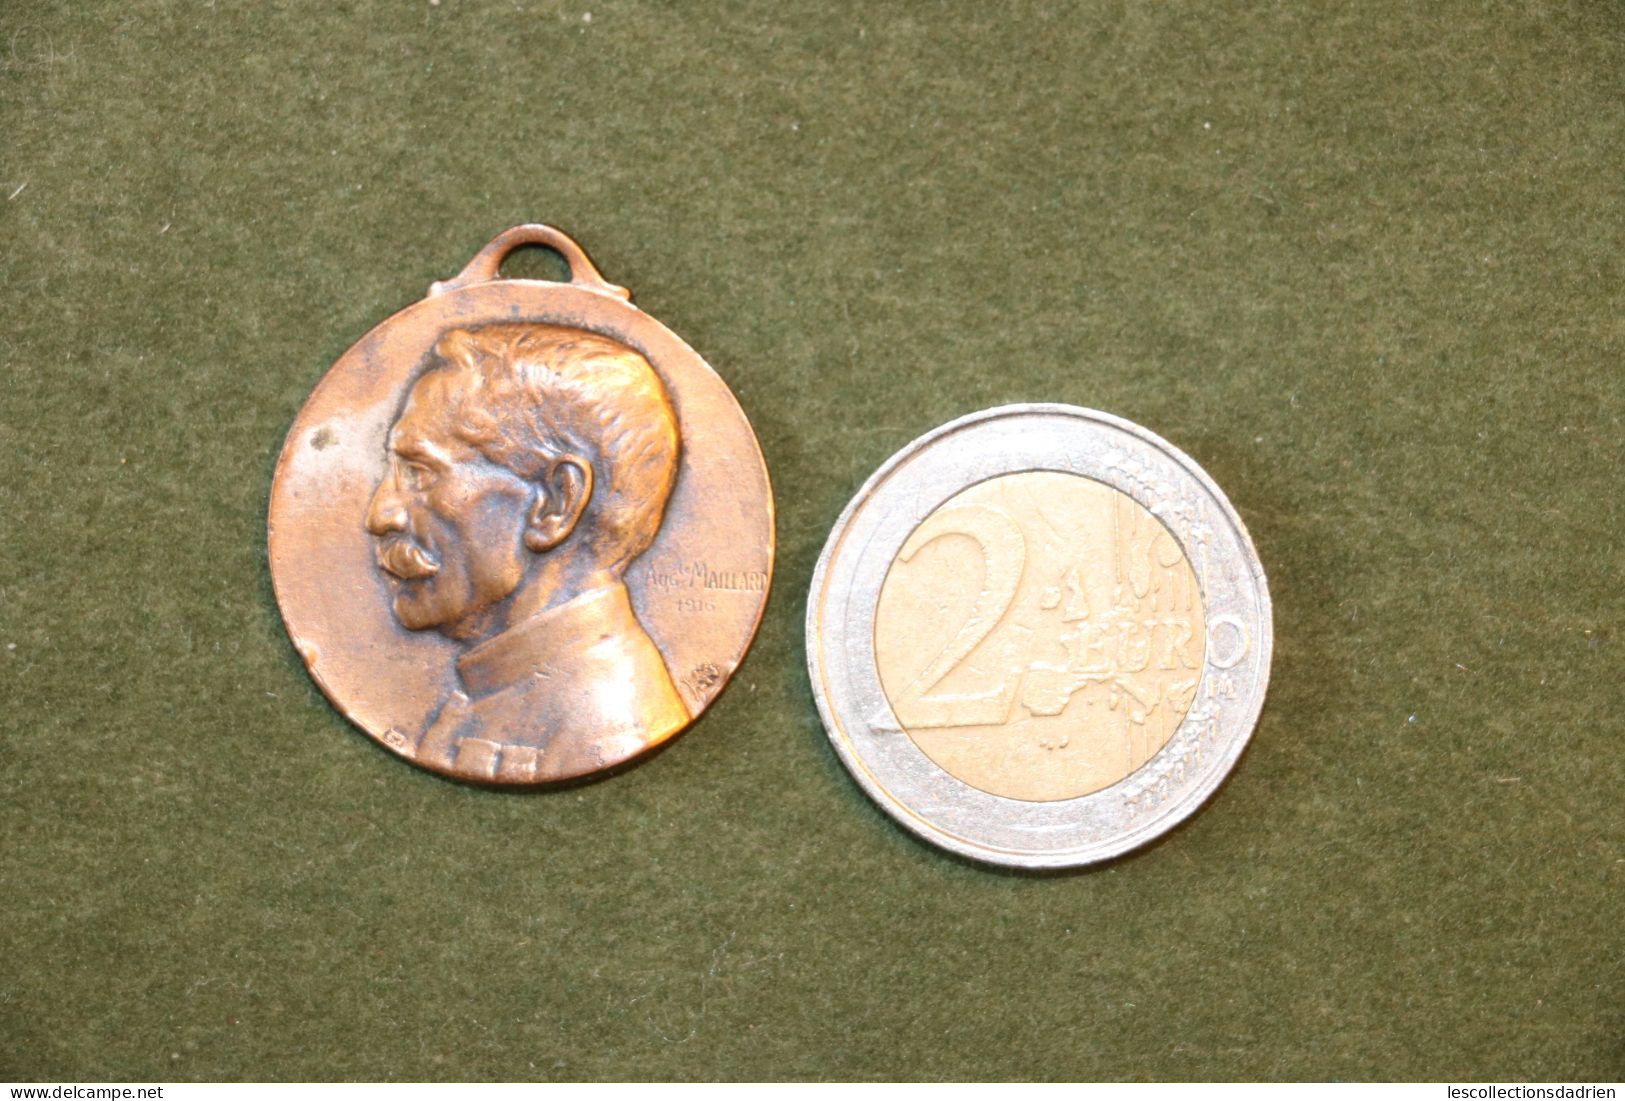 Médaille Française  Paris 1914-1916 Général Gallieni - Guerre 14-18 - French Medal WWI Médaillette Journée  Maillard - Frankreich